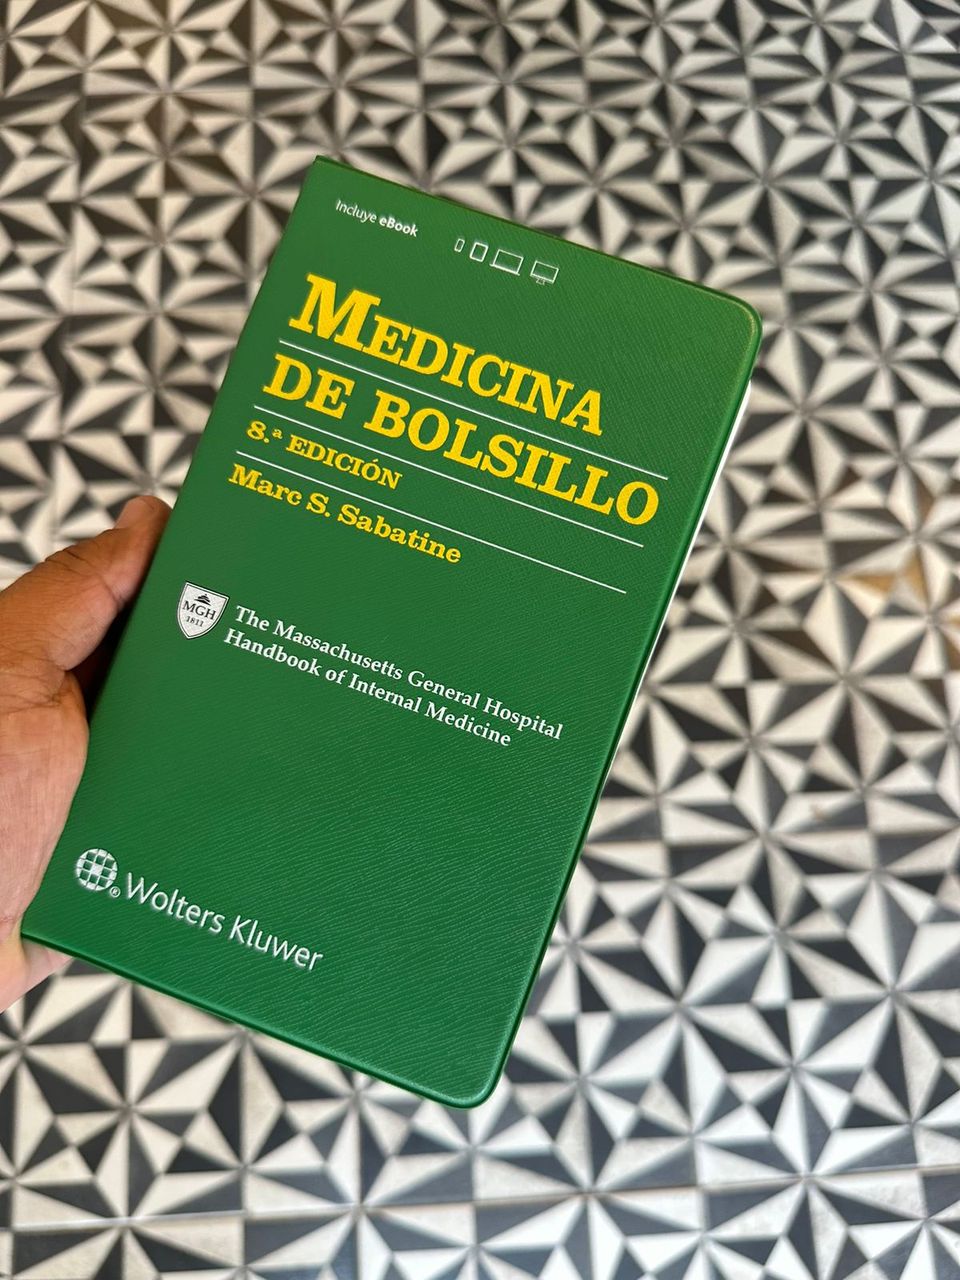 Marc S. Sabatine: El Maestro de la Medicina de Bolsillo